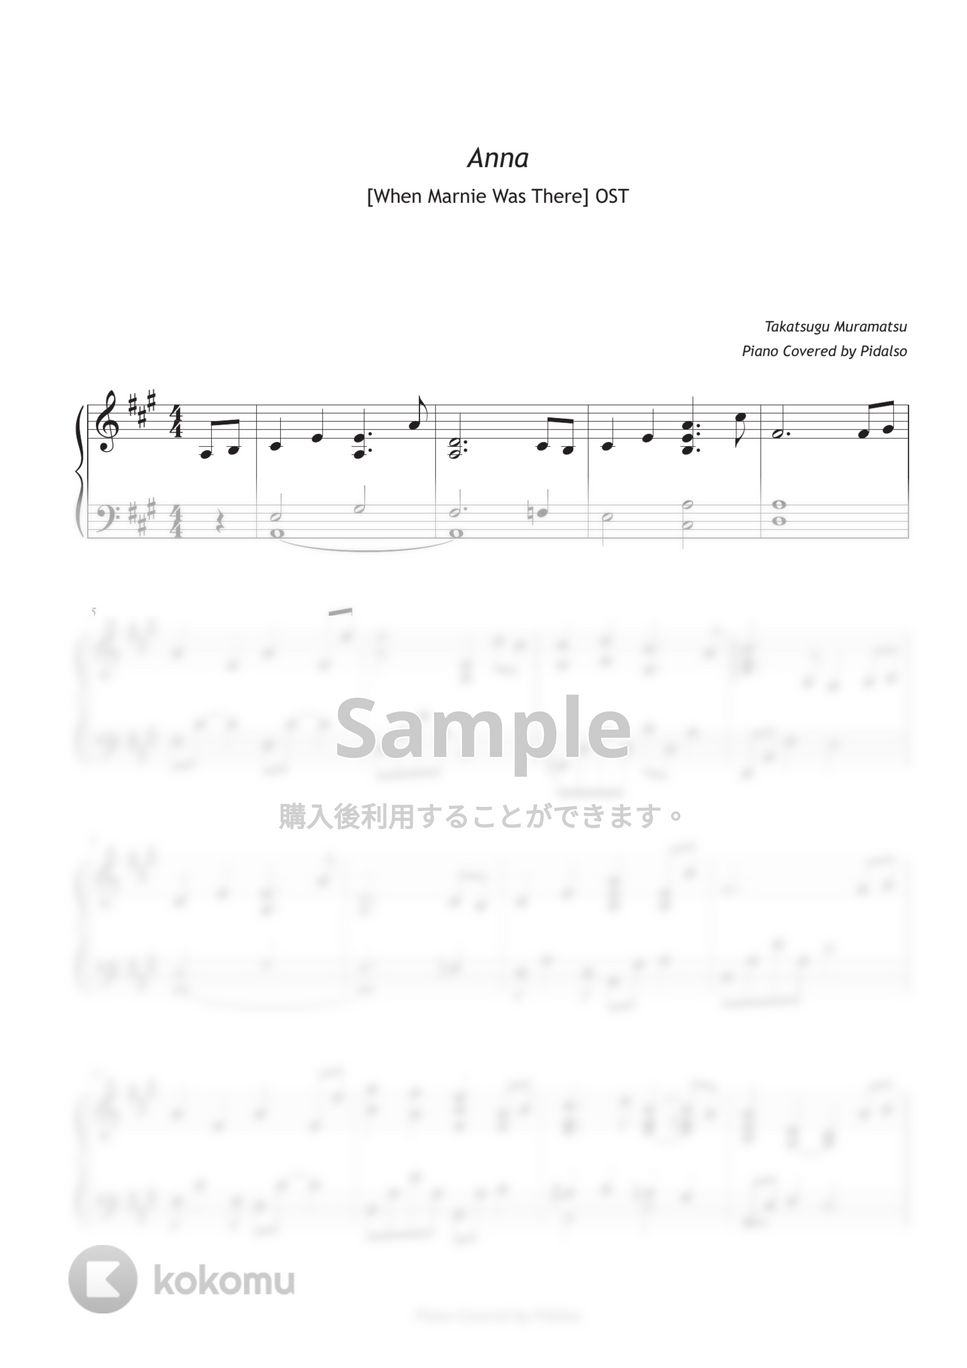 思い出のマーニー OST - Anna (杏奈) by 피달소 Pidalso